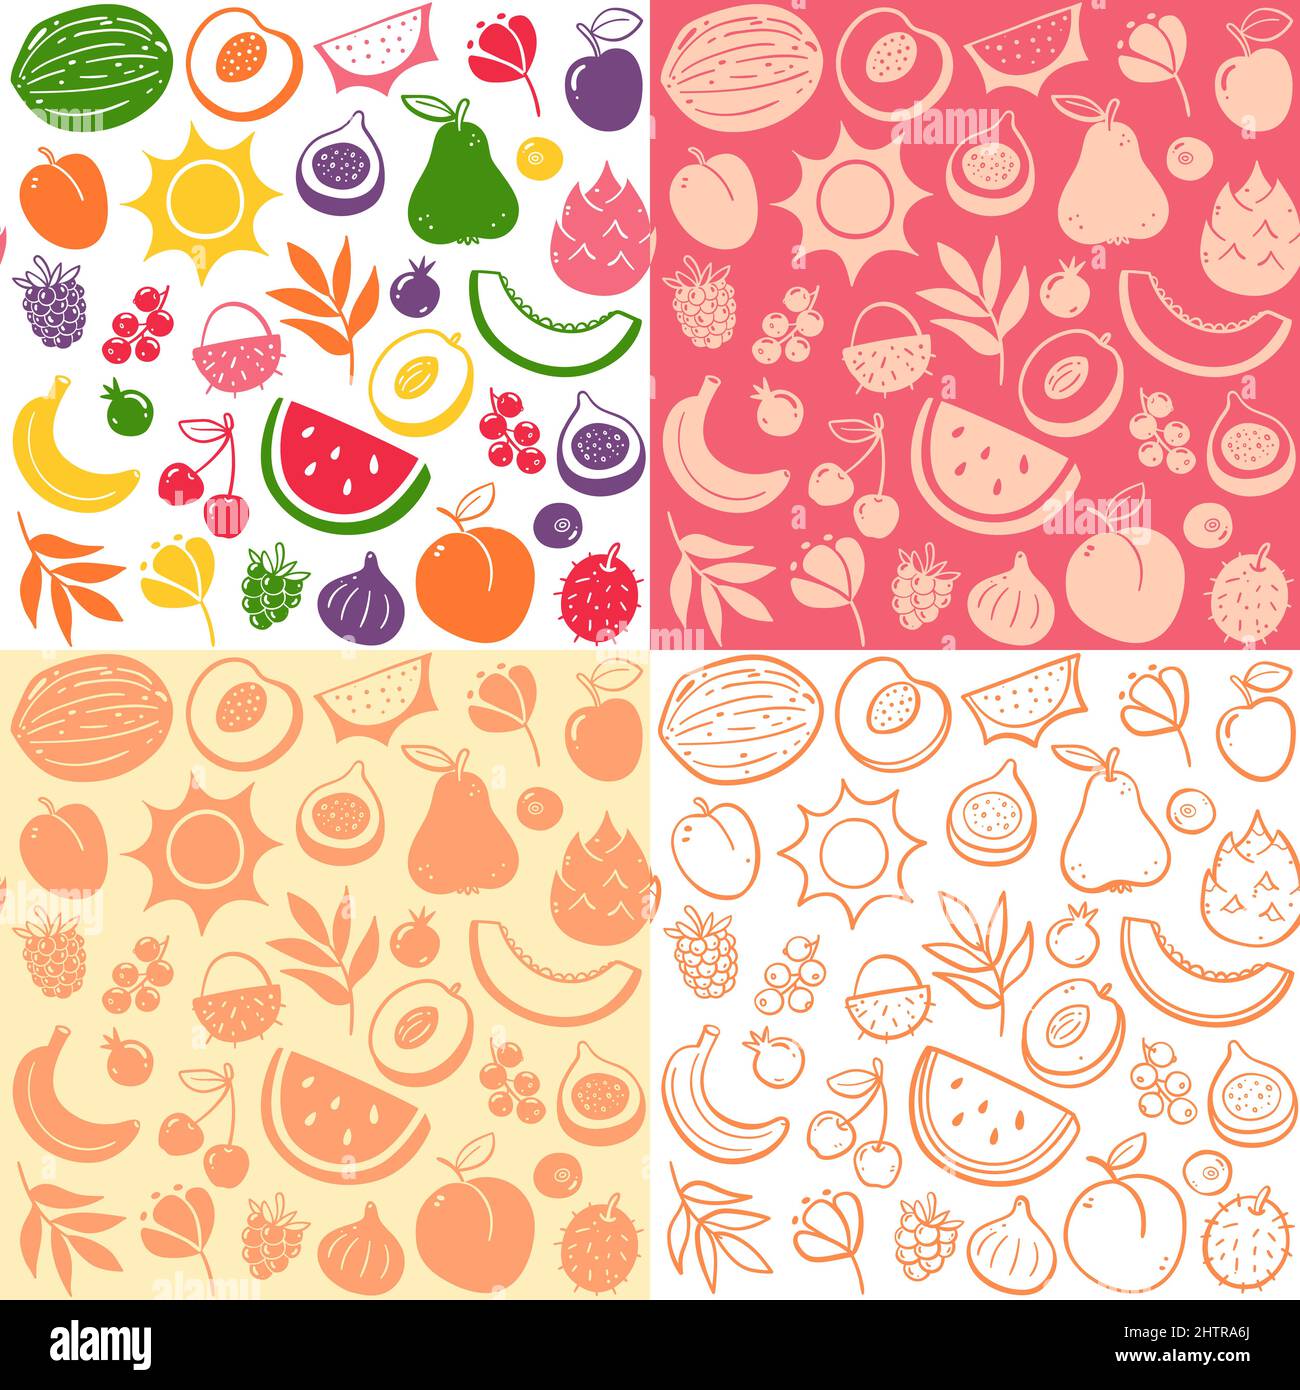 Farbenfrohe Früchte der Saison im nahtlosen Muster. Isolierte Früchte auf weißem Hintergrund. Farbenfrohe, flache Silhouette und Doodle-Style. Vektorgrafik Stock Vektor